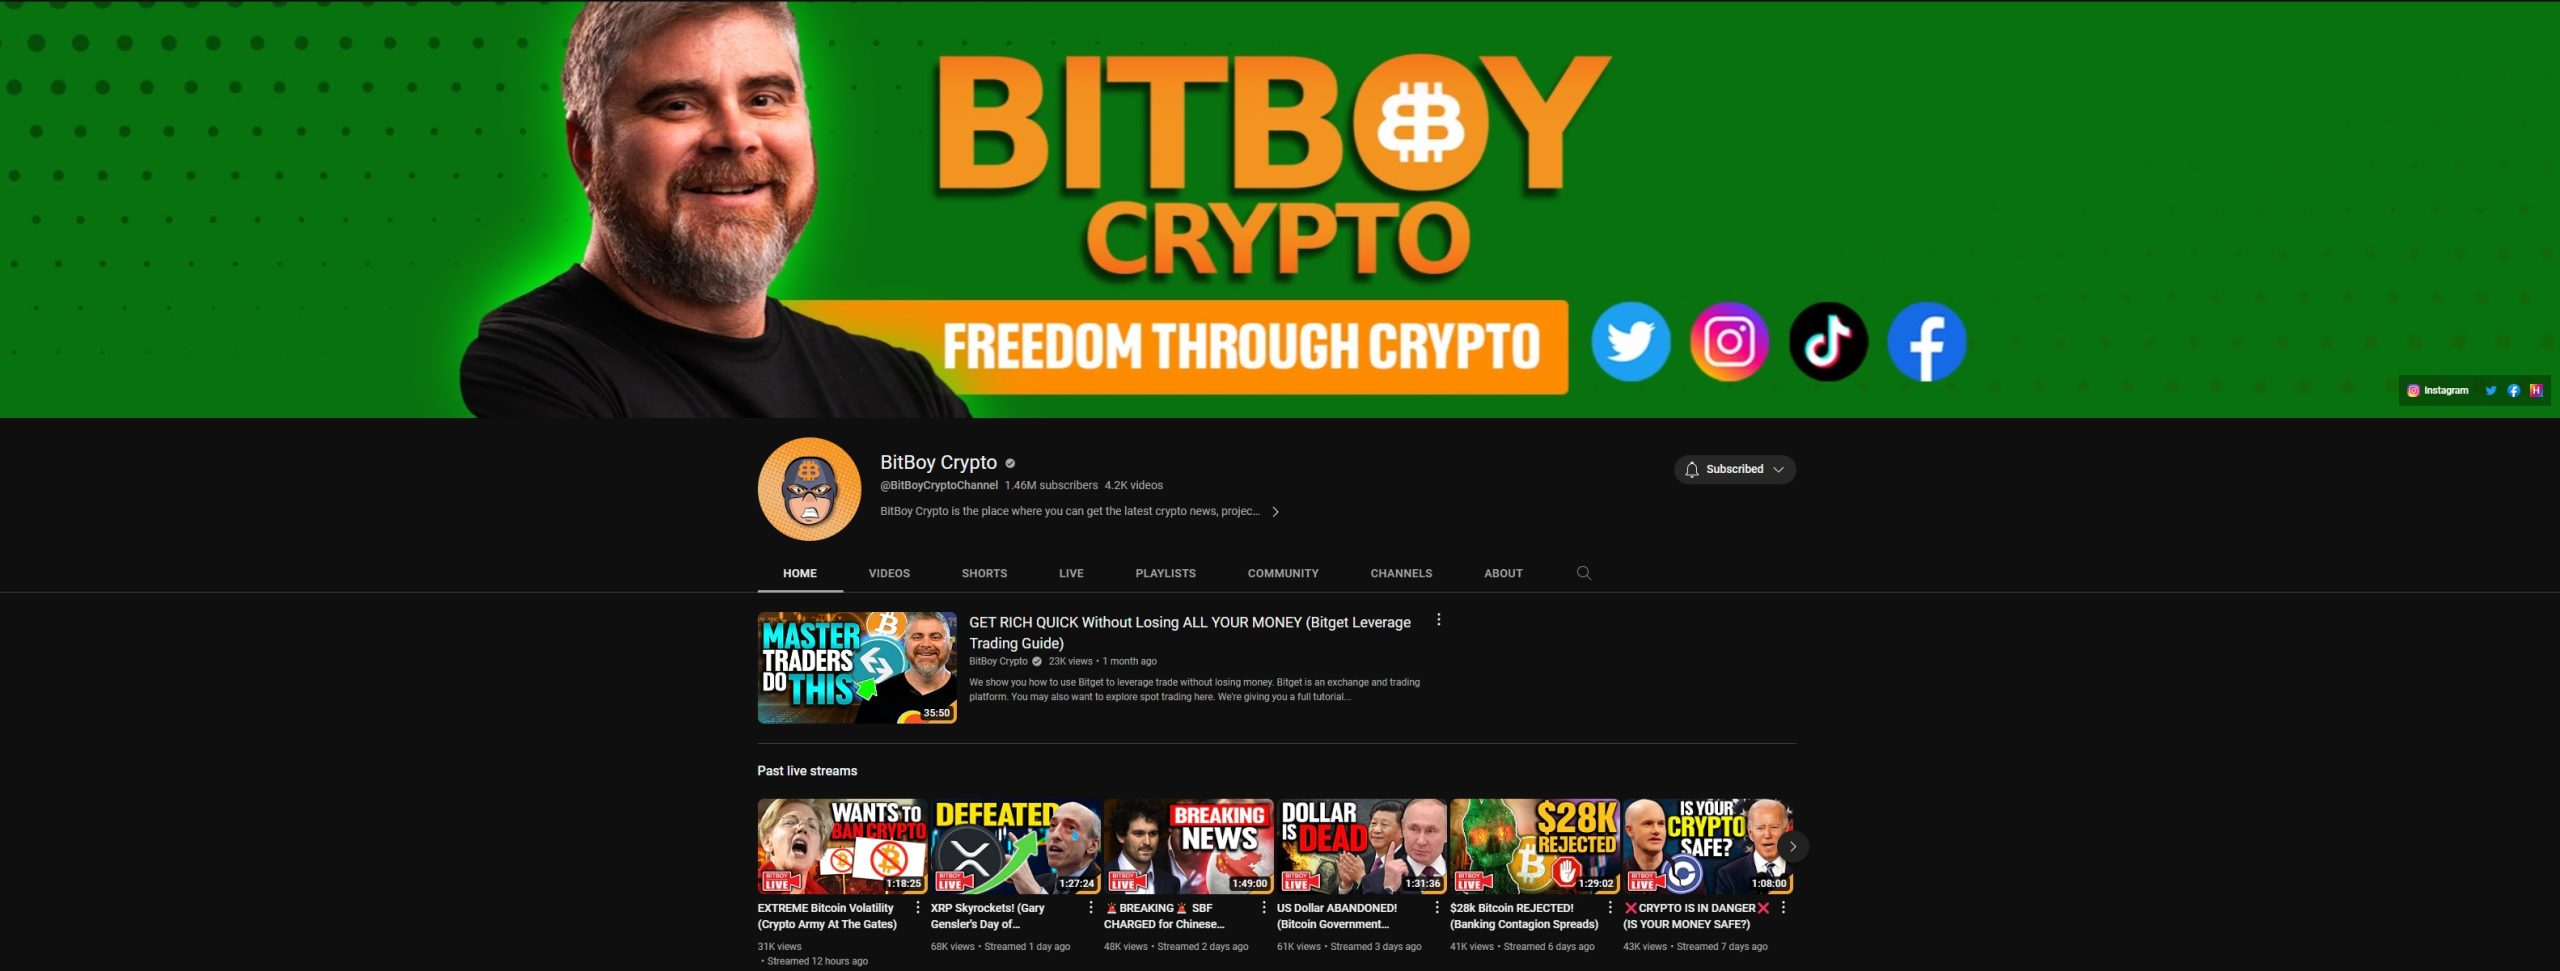 Bitboy crypto youtube